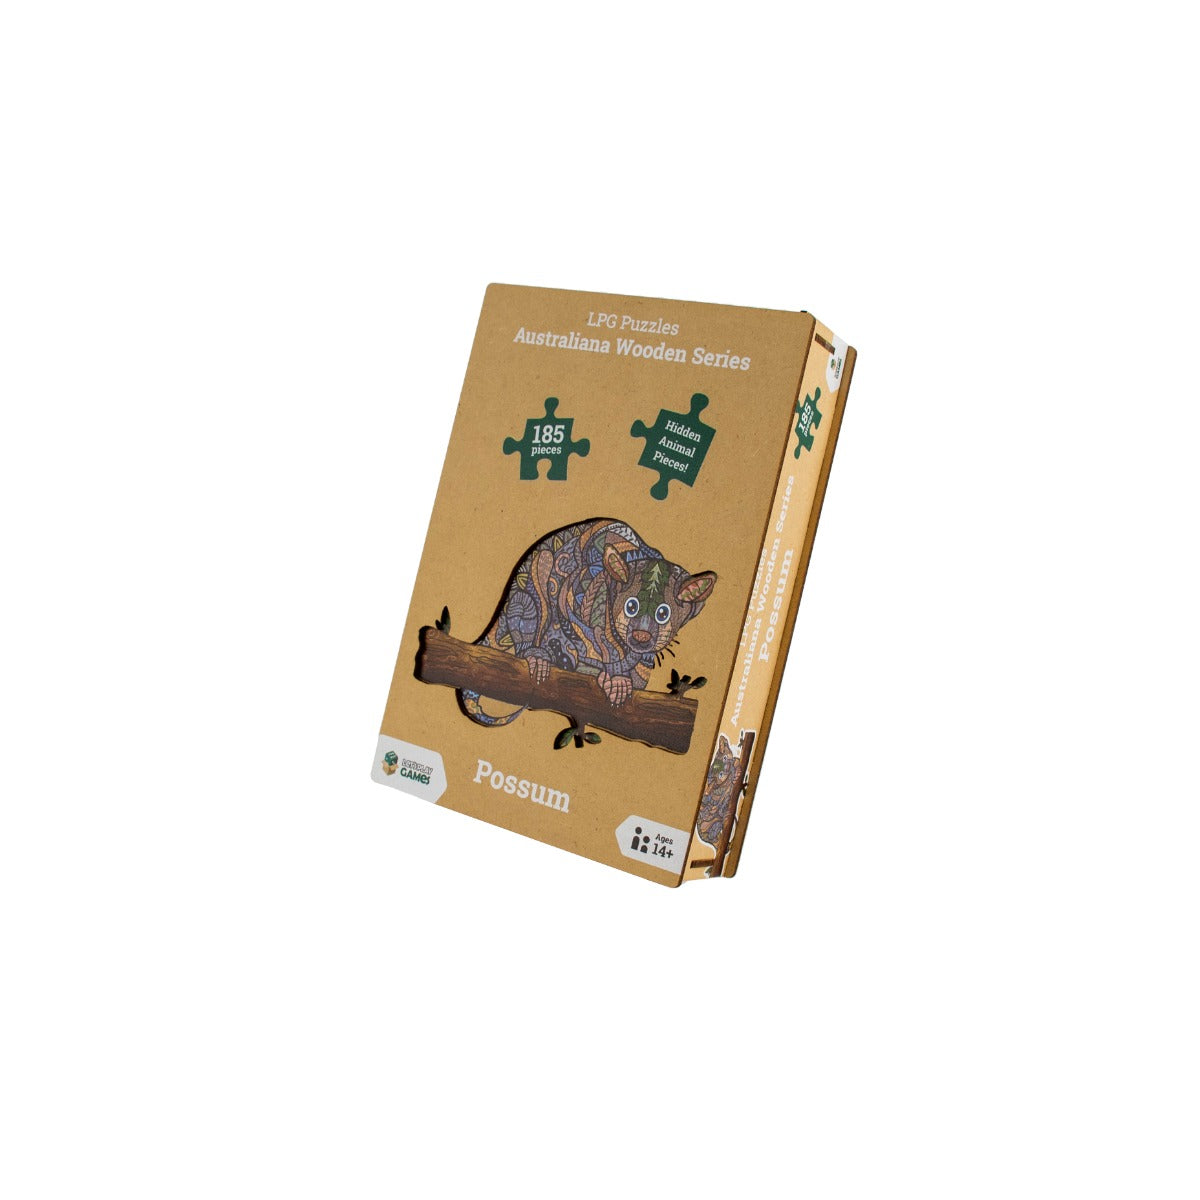 Possum 185pc - Australiania Wooden Series (LPG Puzzles)